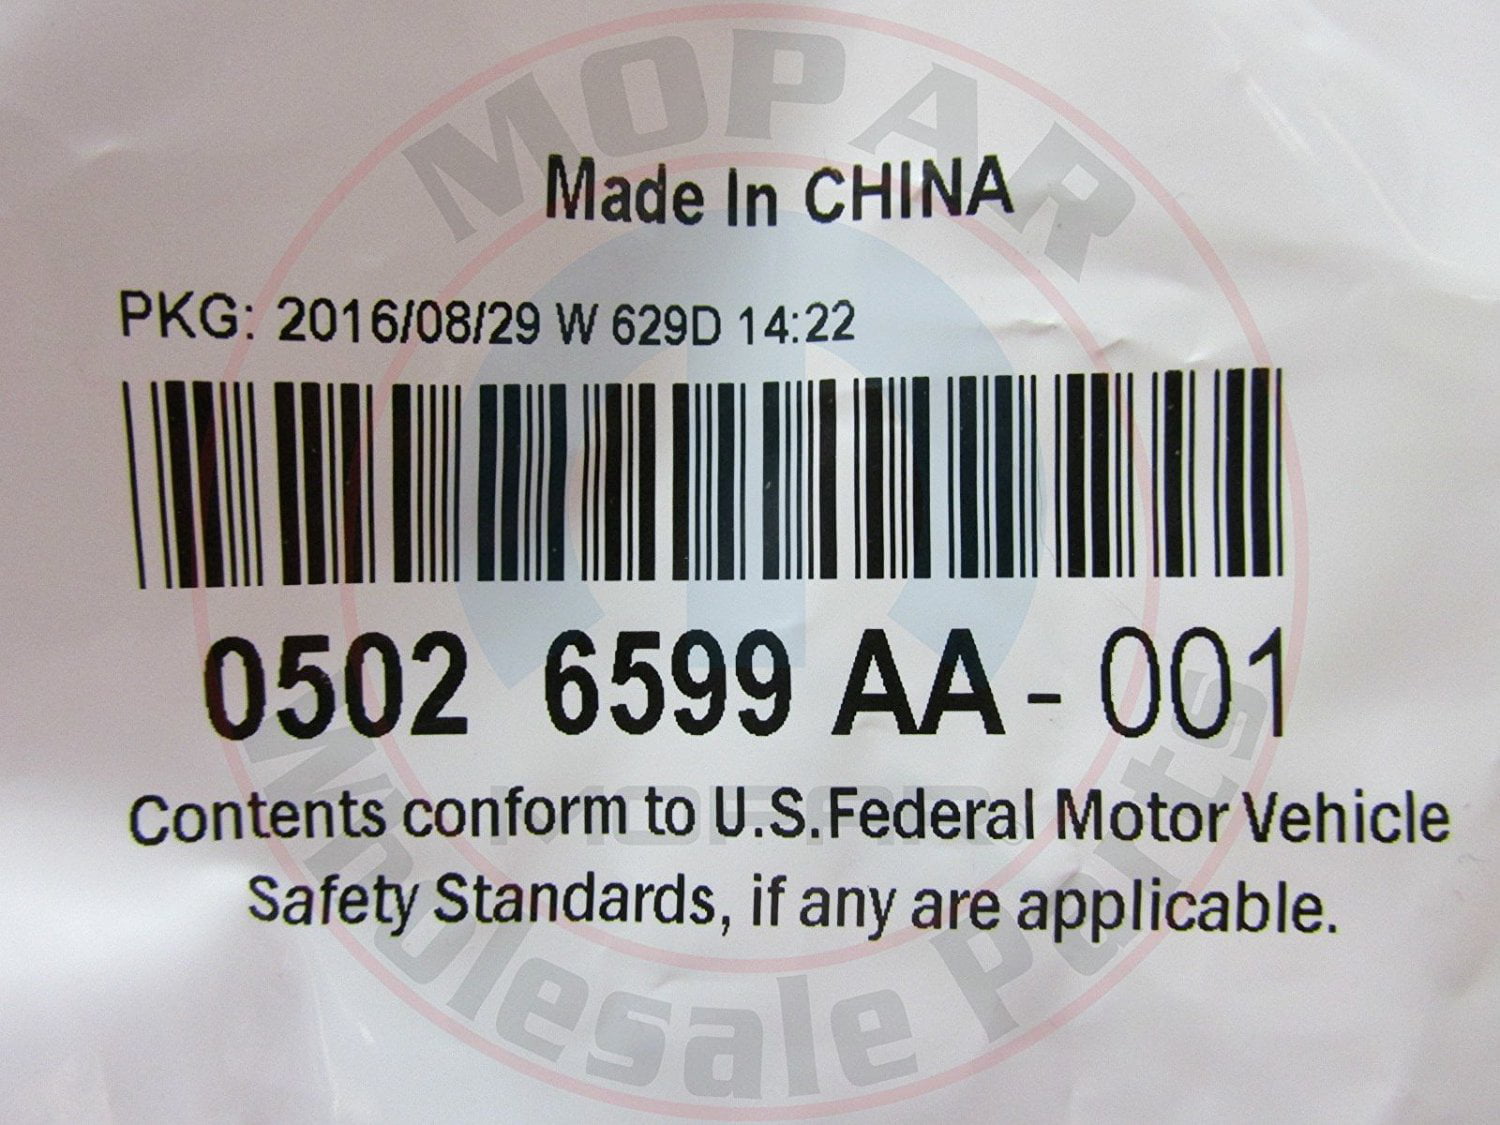 24 Length Standard Tolerance PP Opaque White Sheet ASTM D4101-0112 12 Width Polypropylene 0.187 Thickness